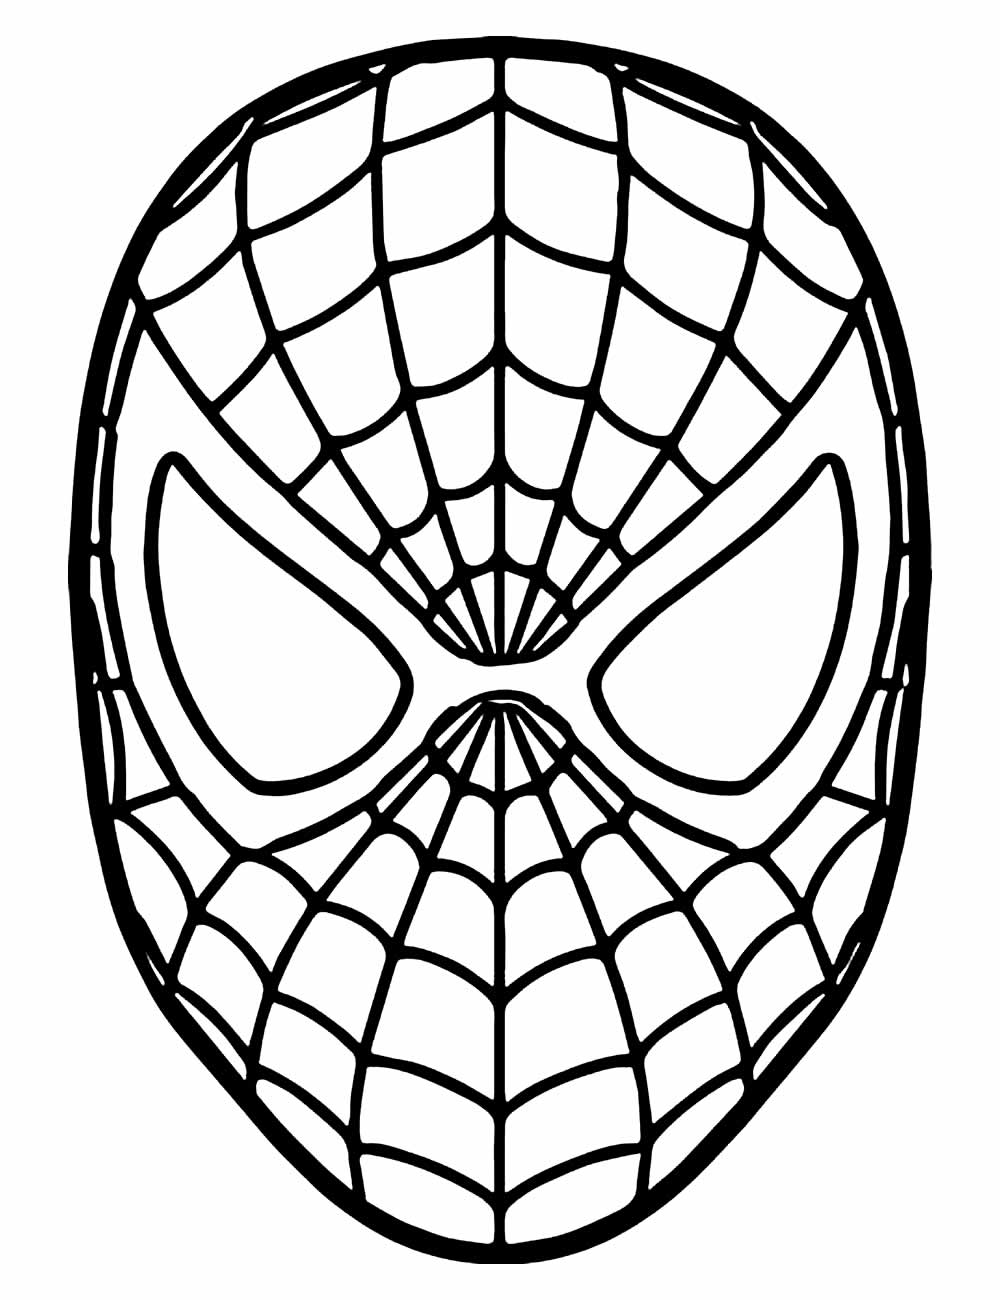 Máscara de Homem-Aranha para imprimir